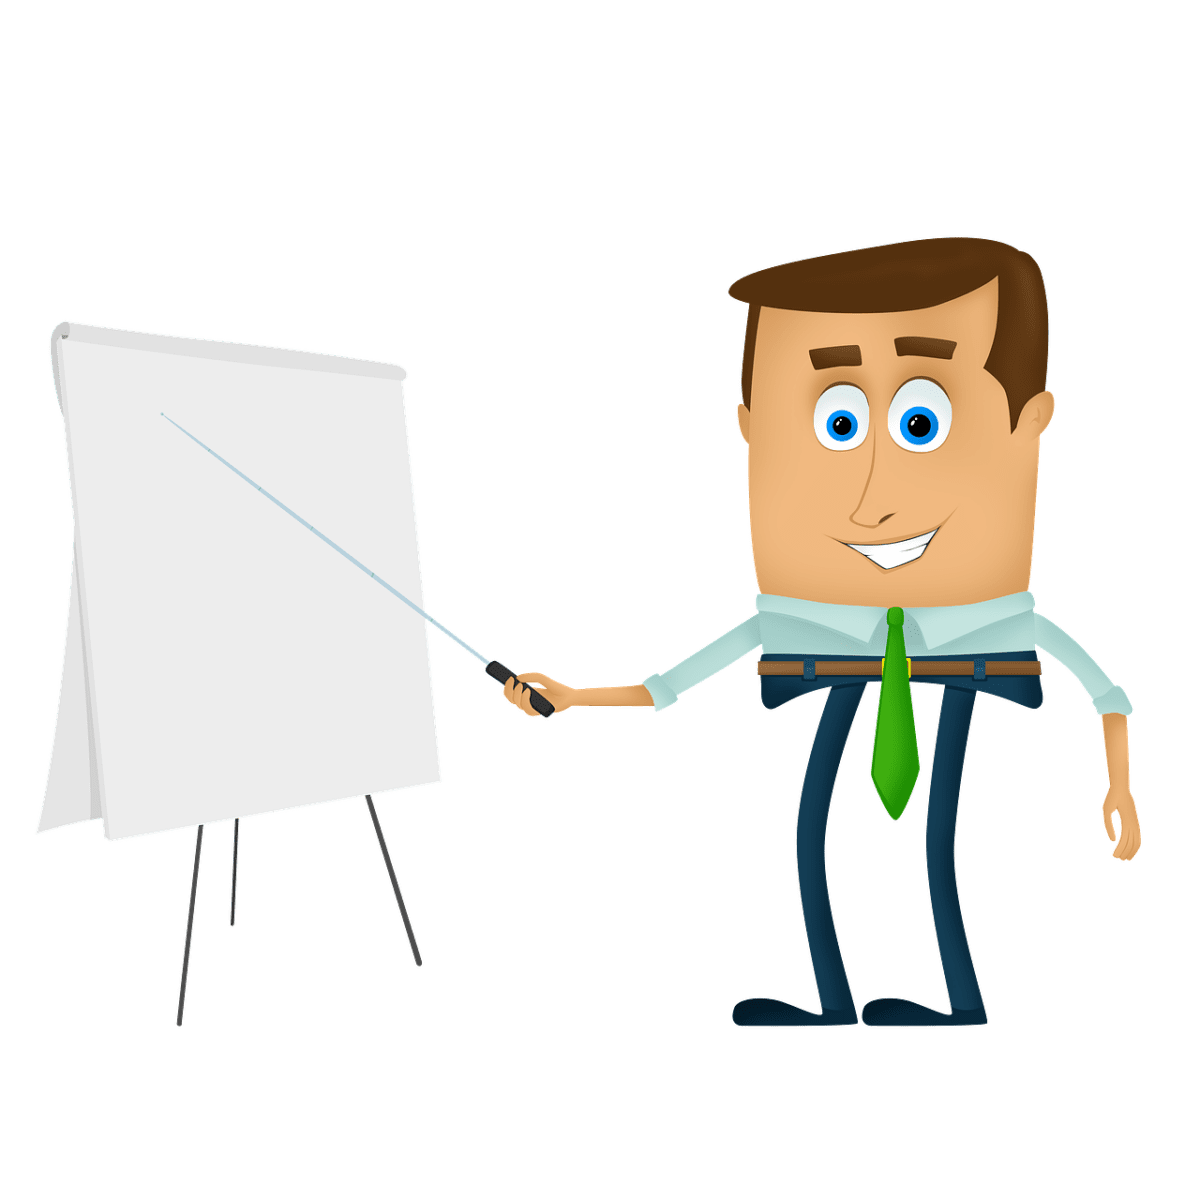 Das Bild zeigt eine Illustration, auf der der ein man mit einer grünen Krawatte auf einem Flashboard mit einem Stab zeigt. Es scheint, als würde er einen Vortrag halten.